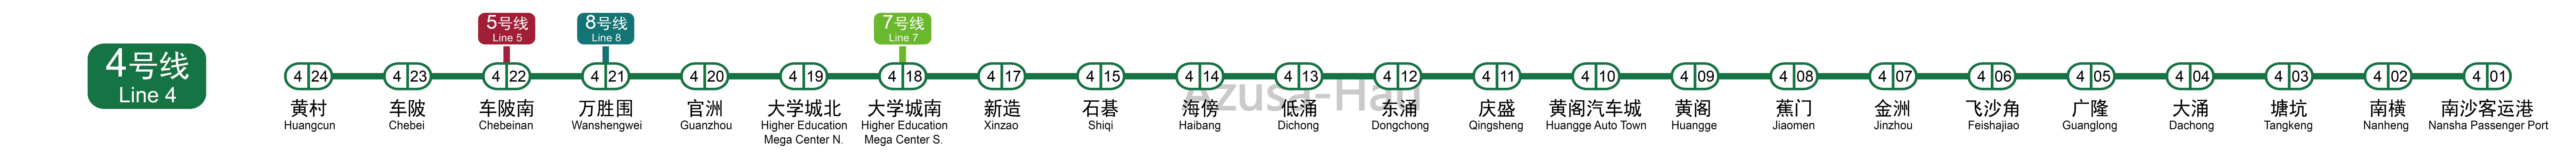 廣州捷運4號線線路圖